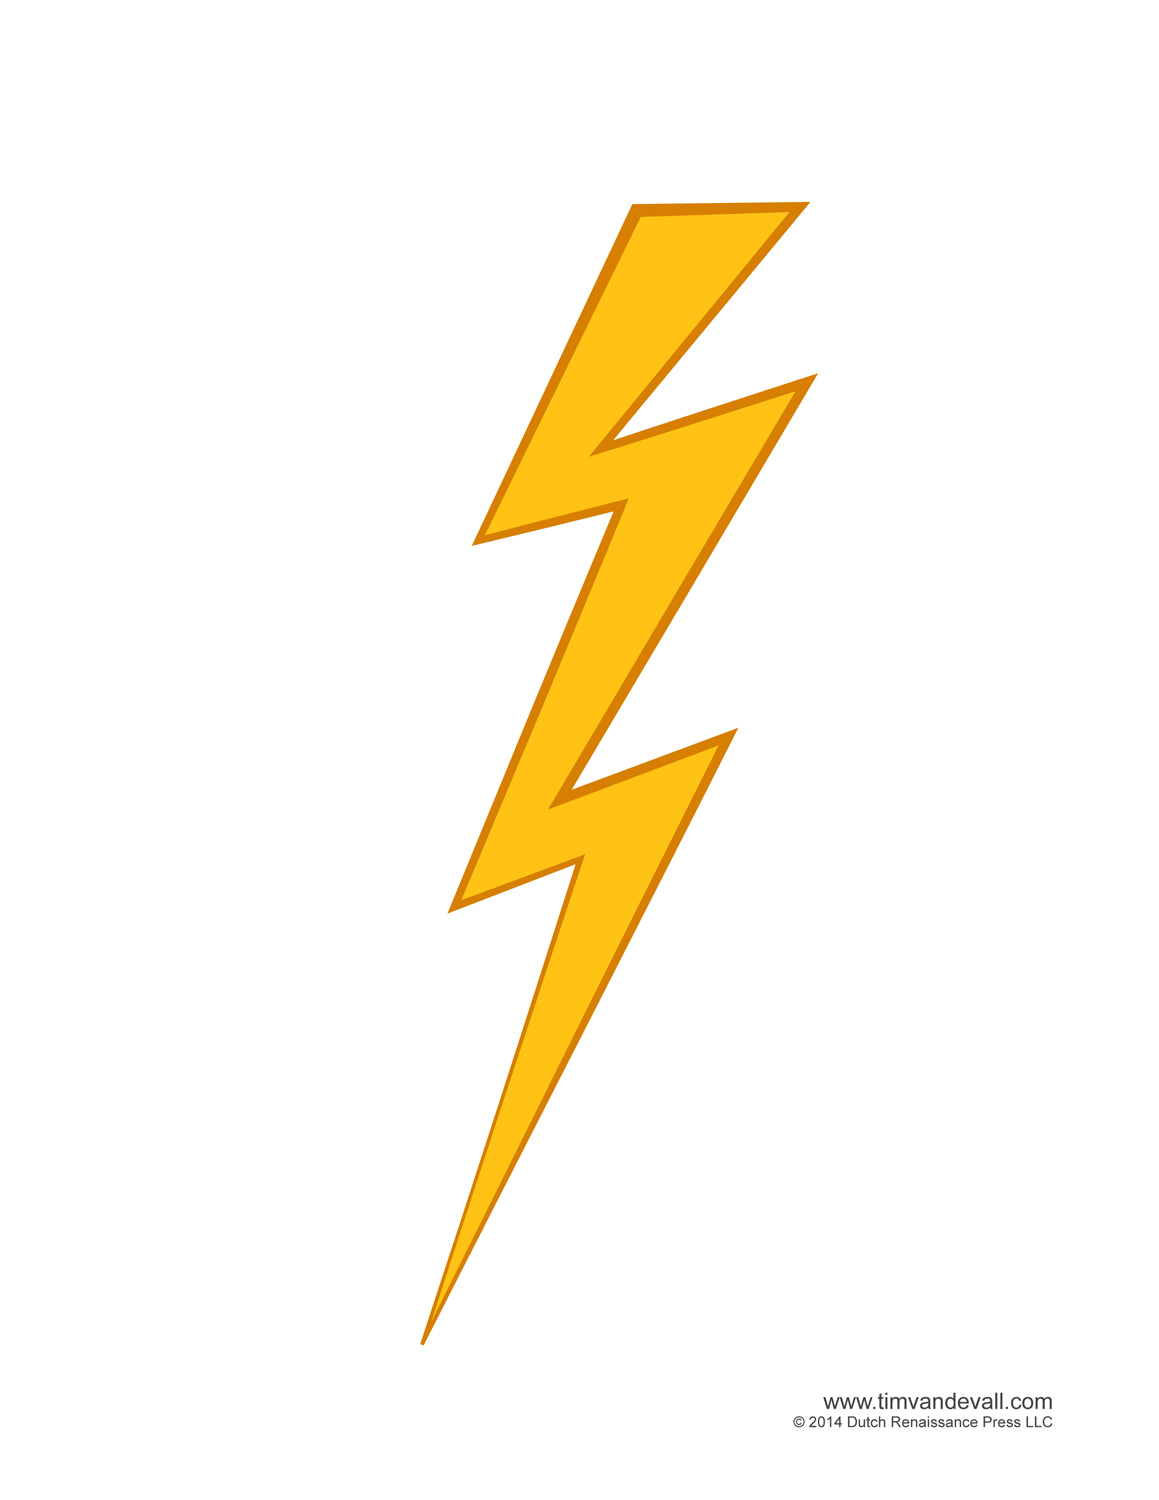 Zeus lightning bolt clipart - Lightning Bolt Clip Art